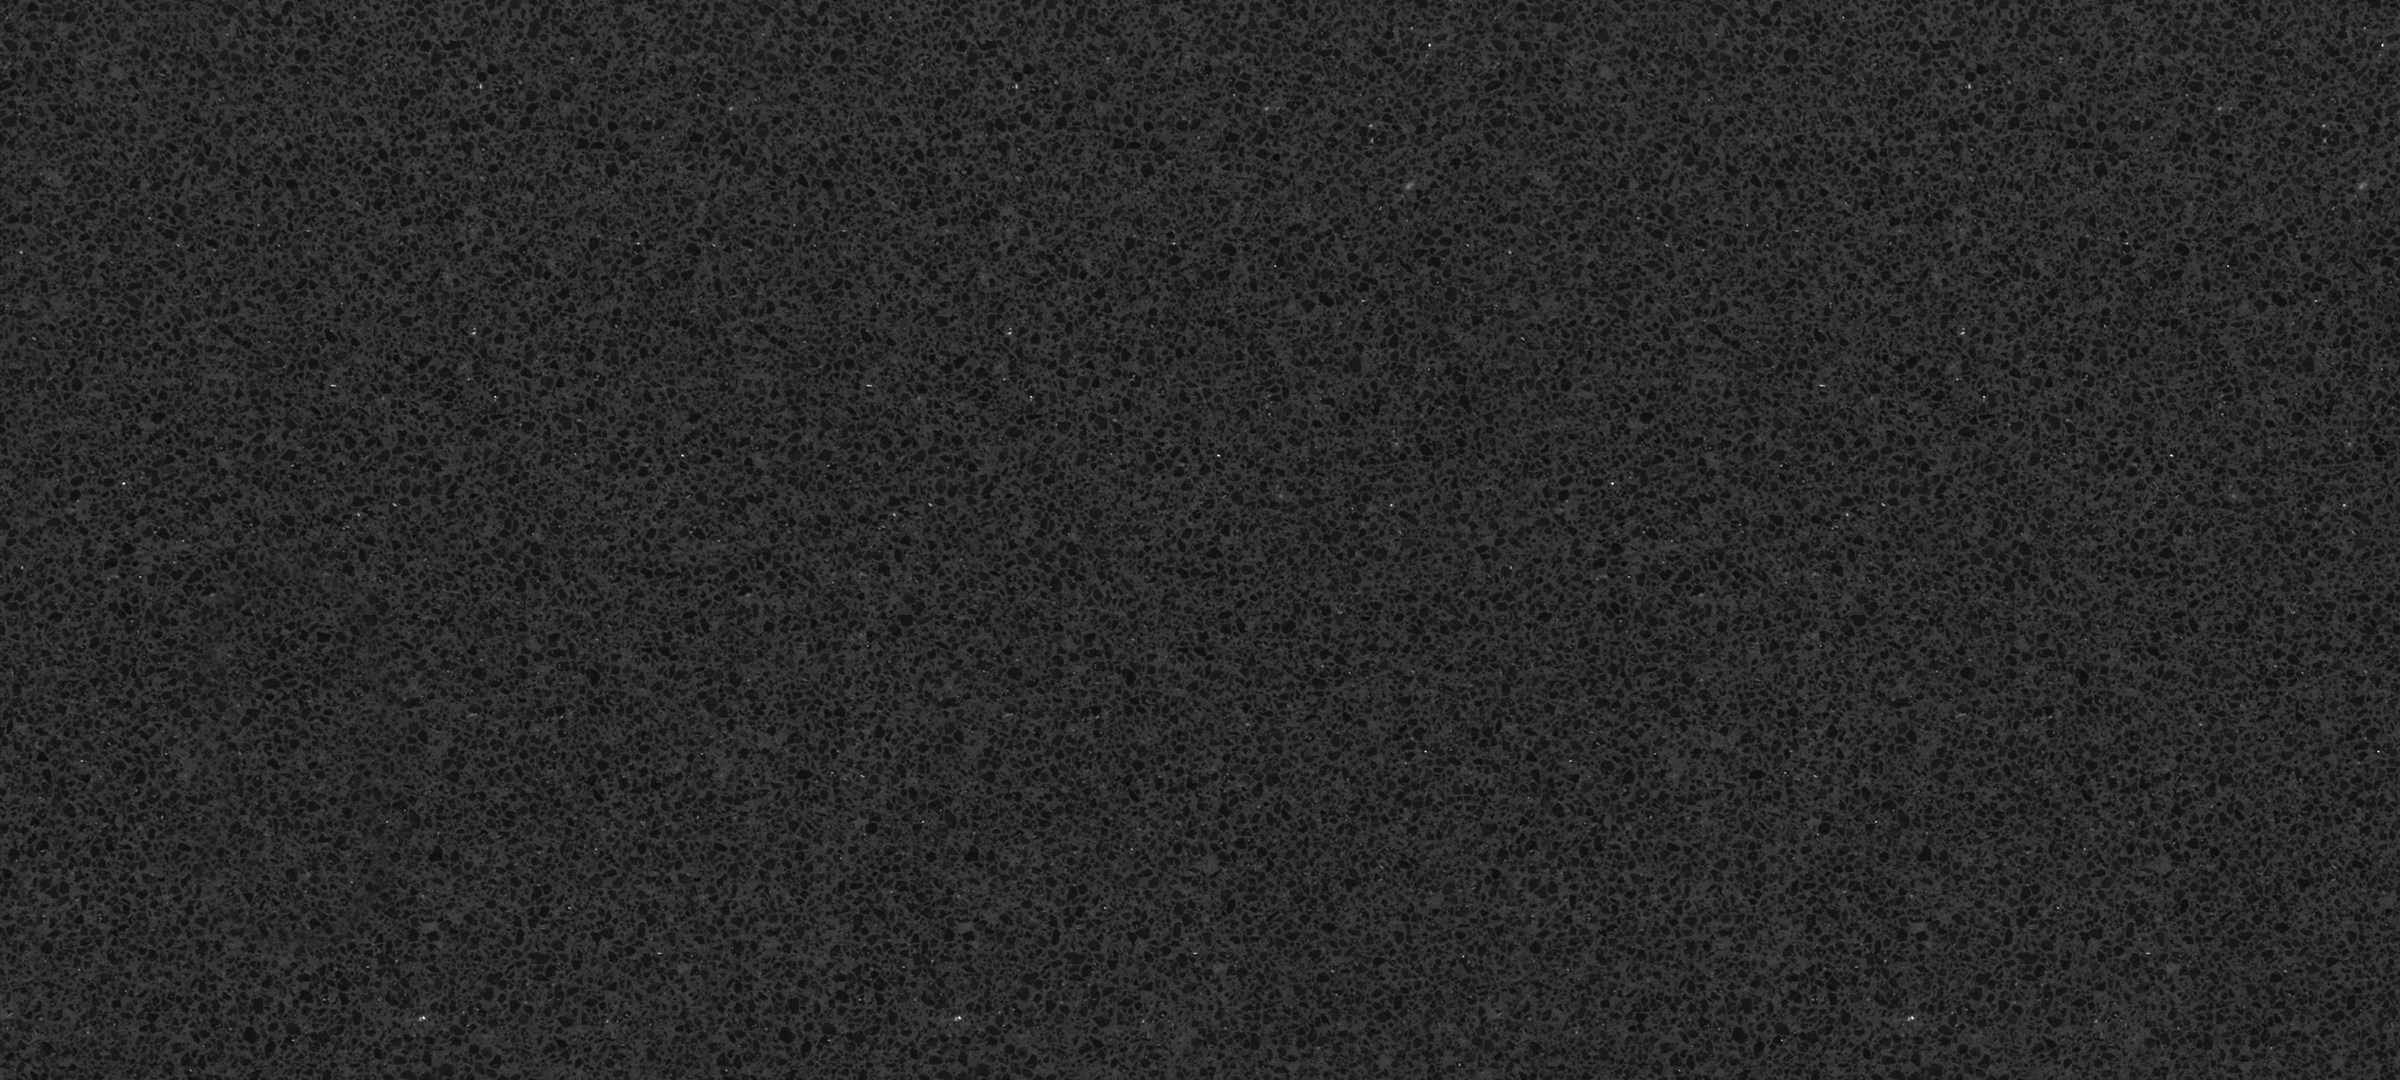 Barat negro. Столешница 4018/s Галактика. Пленка ПВХ антрацит sg005. Черный камень текстура.